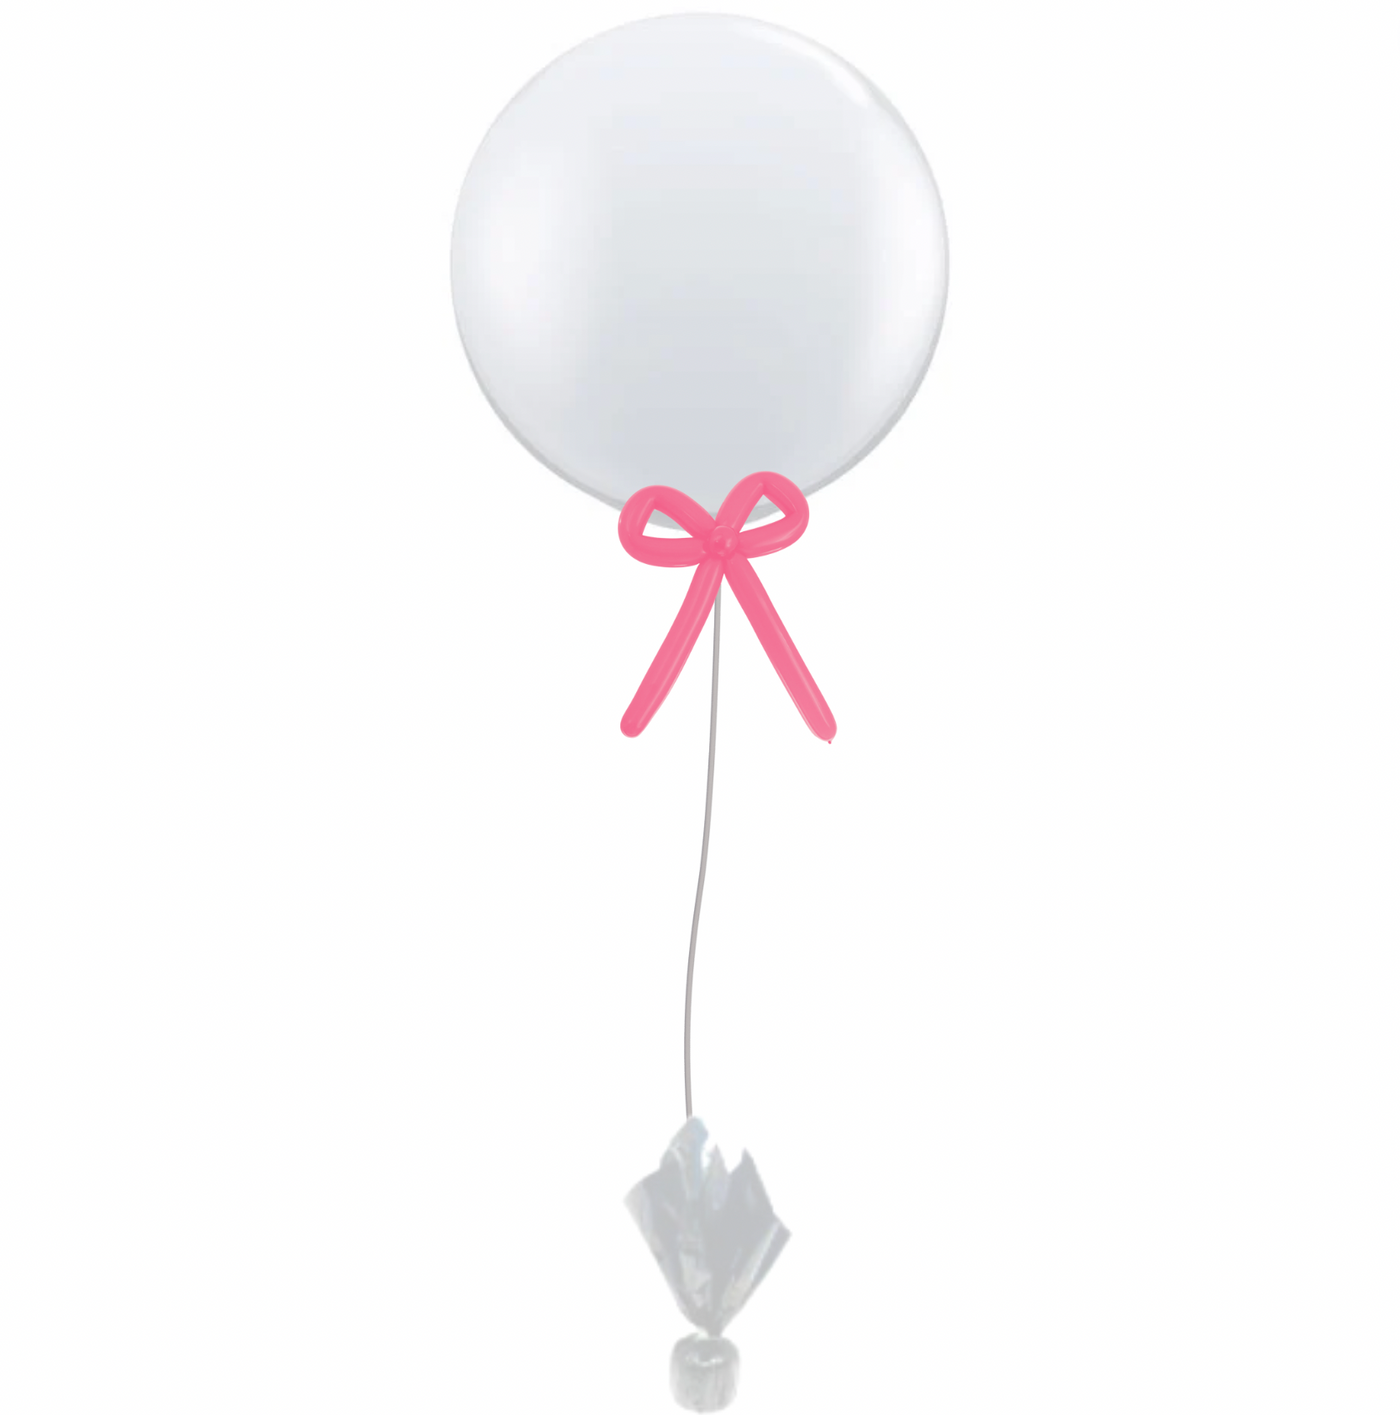 Bridal Bows Giant Gift Balloon